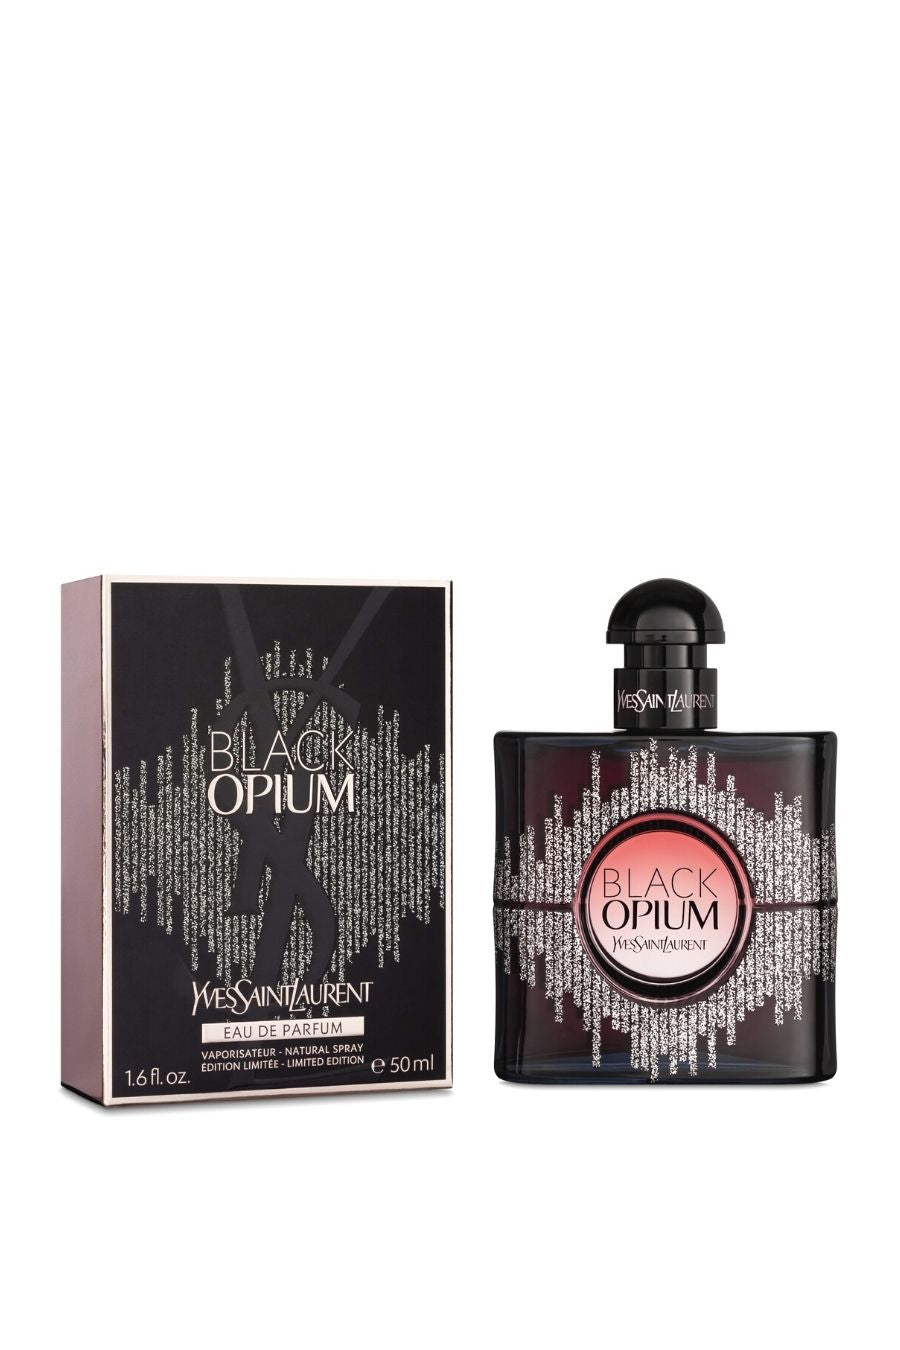 Black Opium Eau de Parfum Spray by Yves Saint Laurent